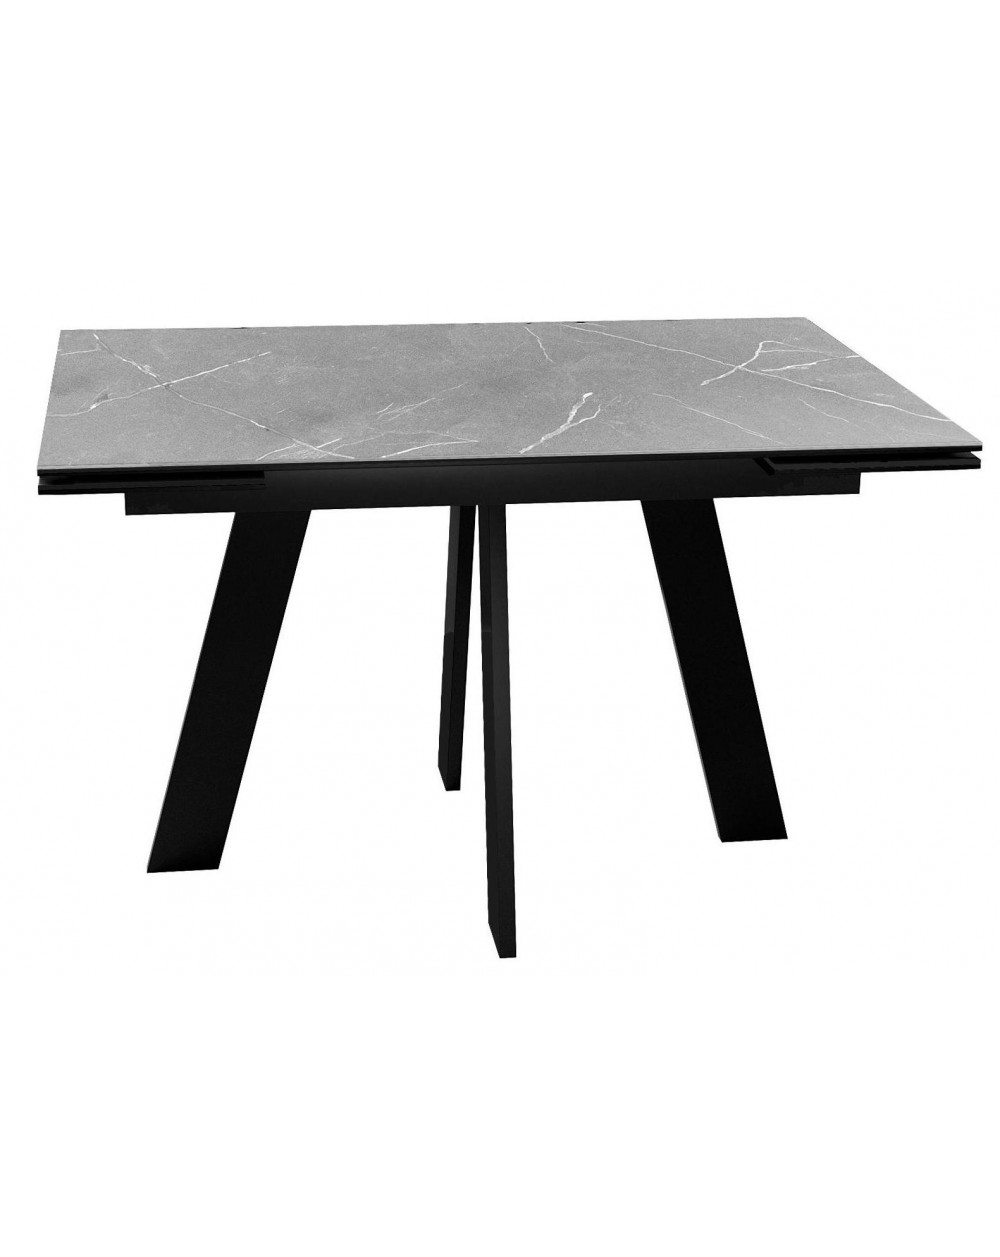 Стол SKM120 Керамика серый мрамор/подстолье черное/опоры черные фото Stolmag